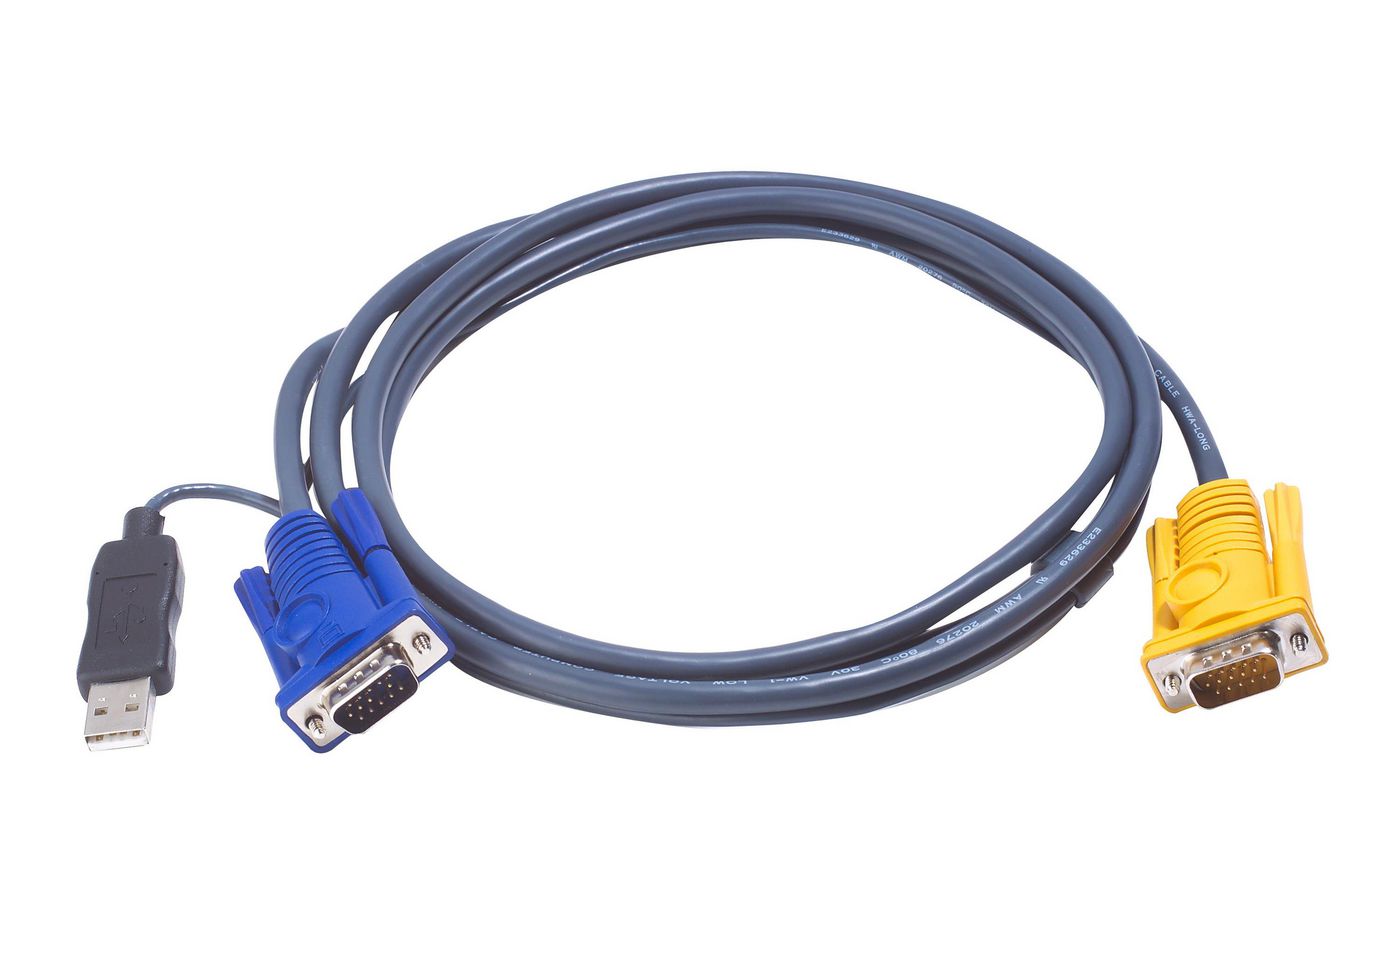 KVM Cable USB Sphd 15m To 1x Hdsub 15m 1x USB A Male 1.8m